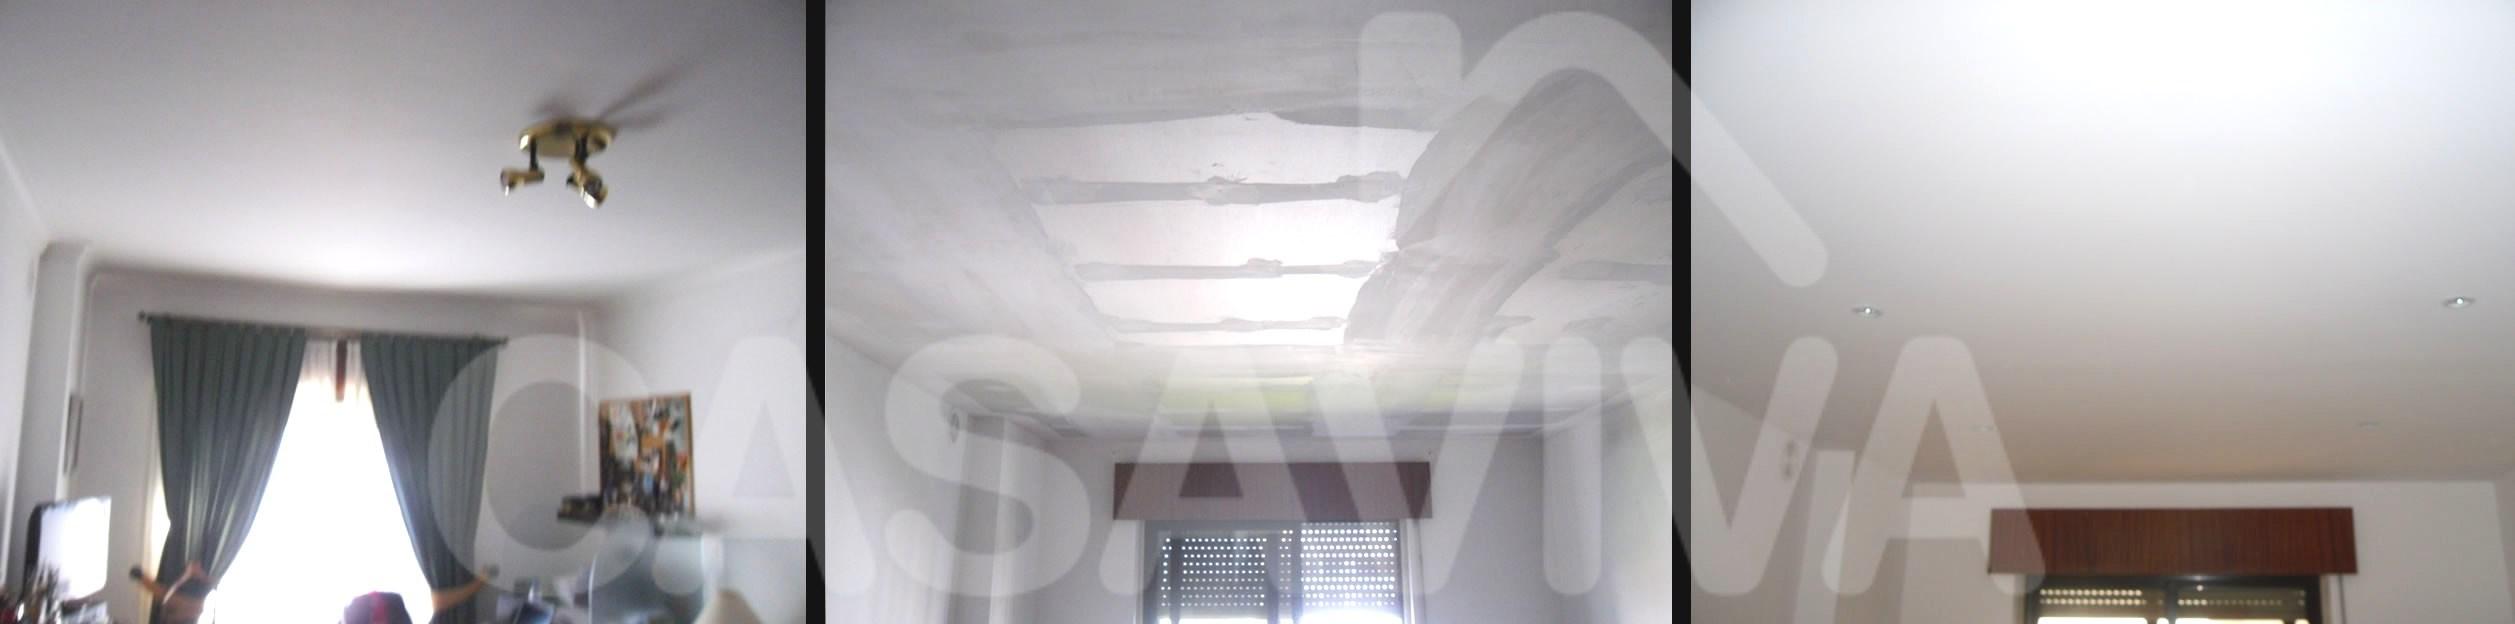 Colocação de tecto falso no quarto do apartamento.Reparação de fissuras.Pintura completa de paredes.Focos de luz embutidos.